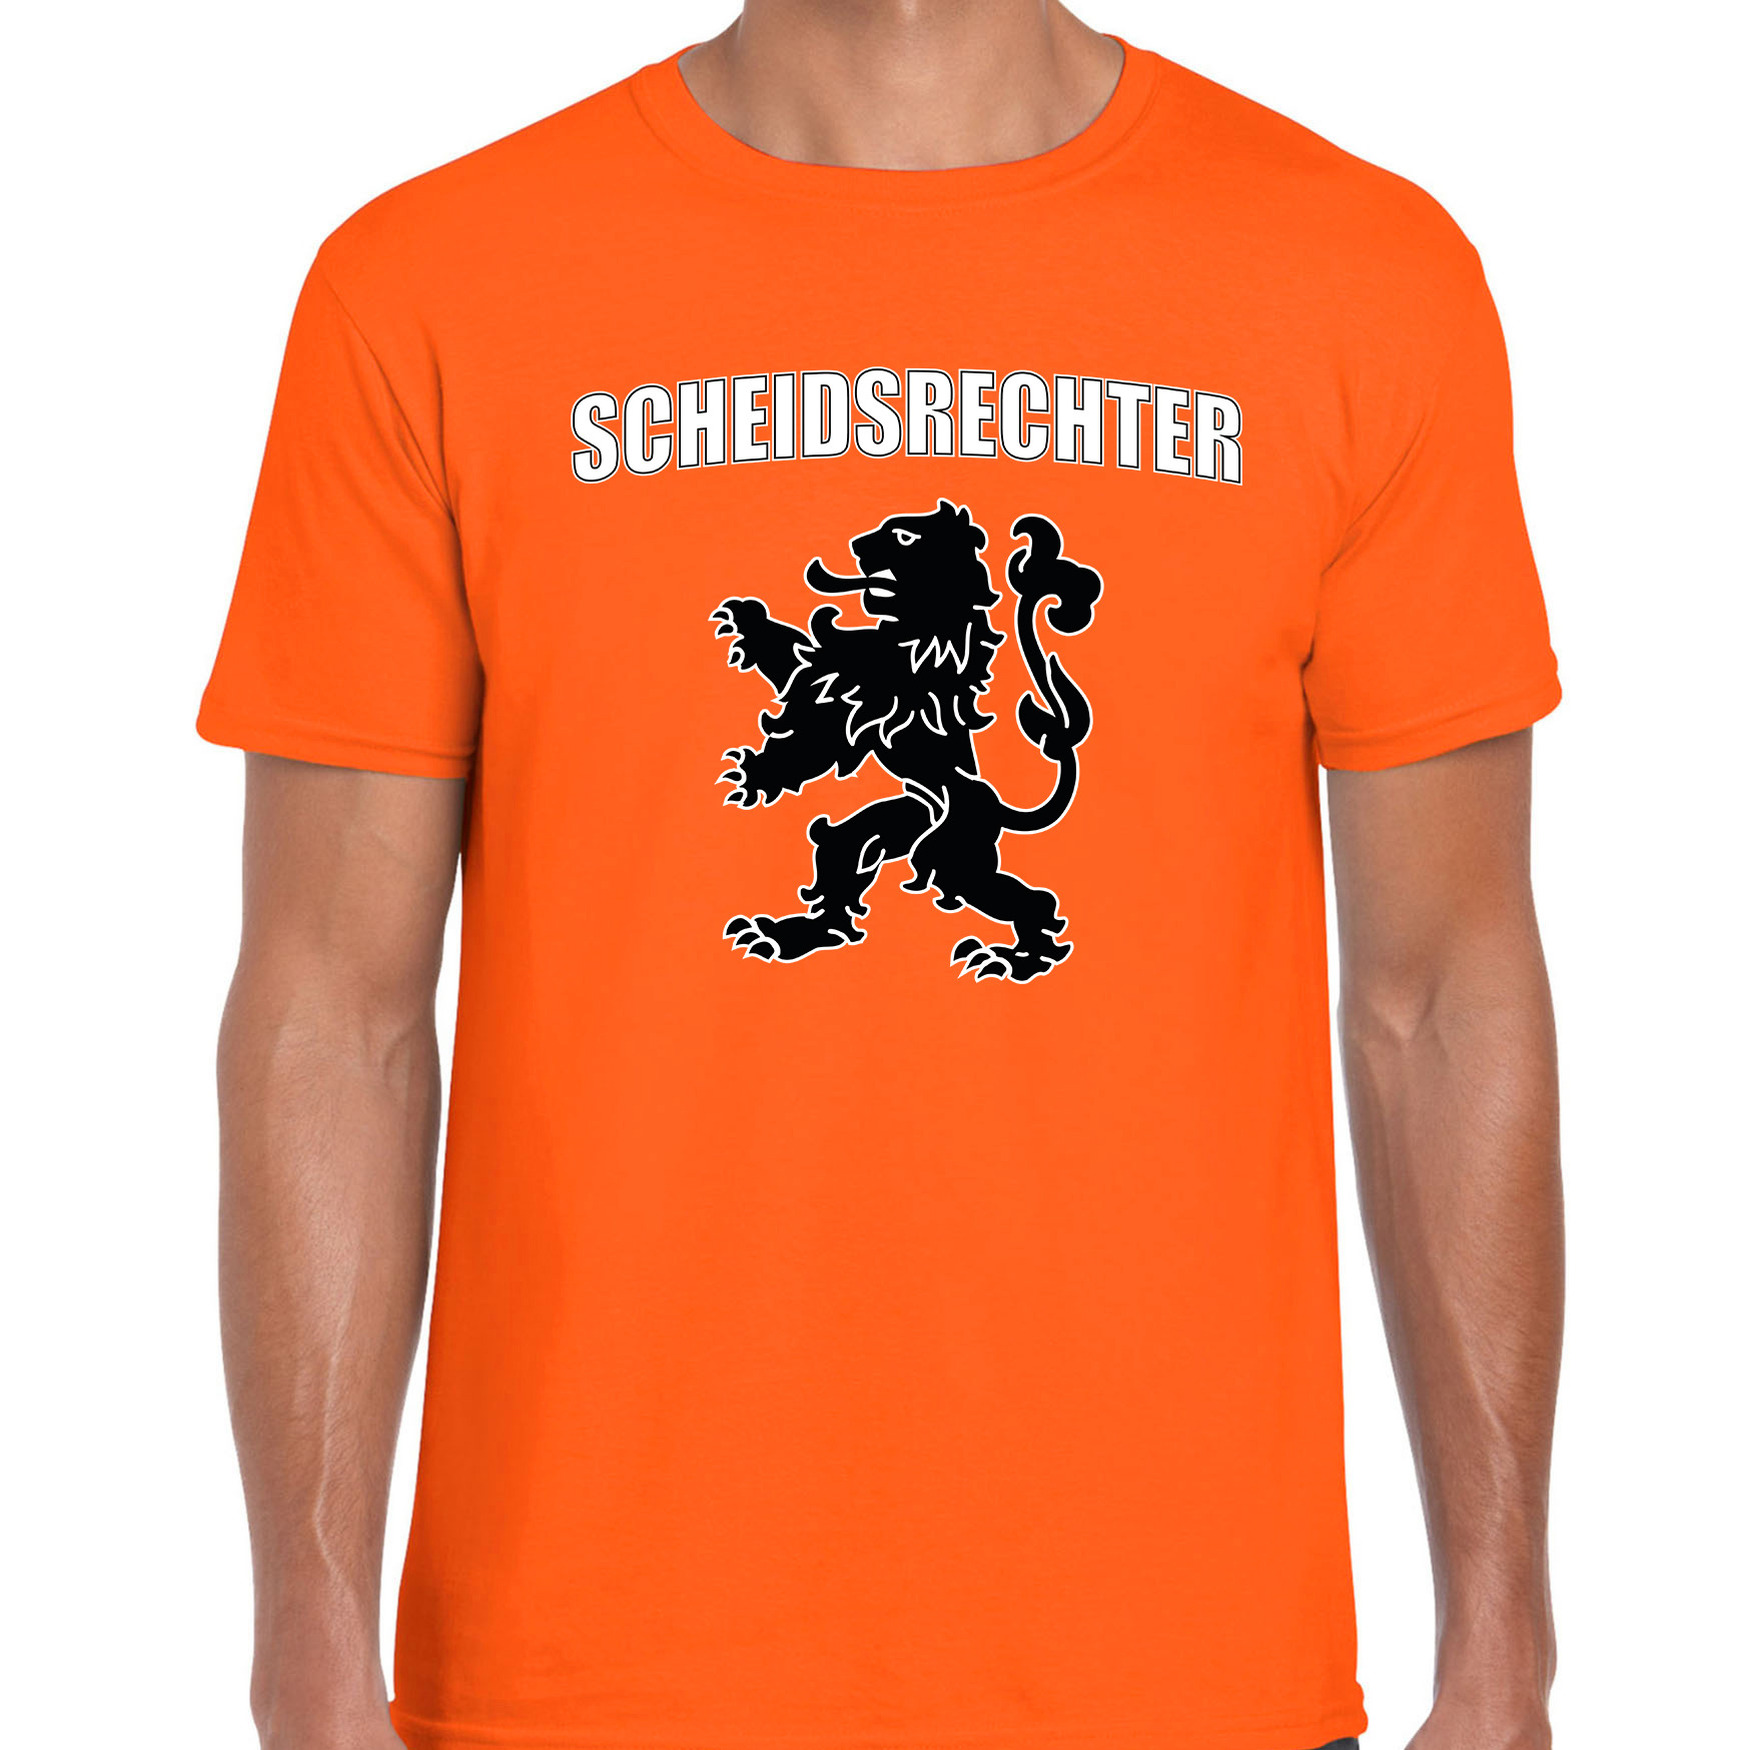 Scheidsrechter met leeuw oranje t-shirt Holland-Nederland supporter EK- WK voor heren